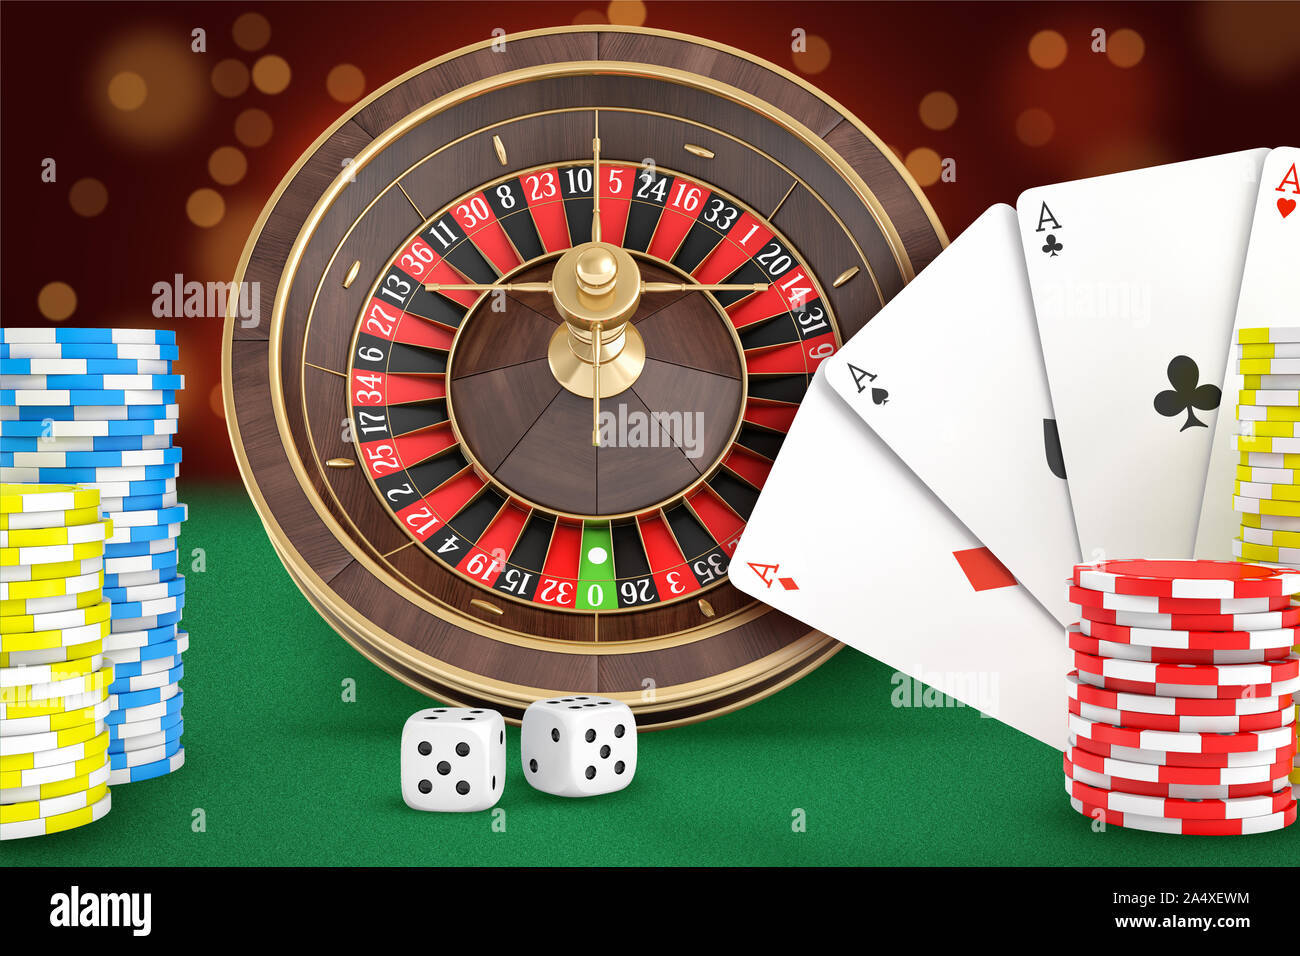 3D-Rendering von casino roulette Steht auf einem grünen Filz Tisch mit Karten, Würfel, Chips Stapeln in der Nähe. Stockfoto